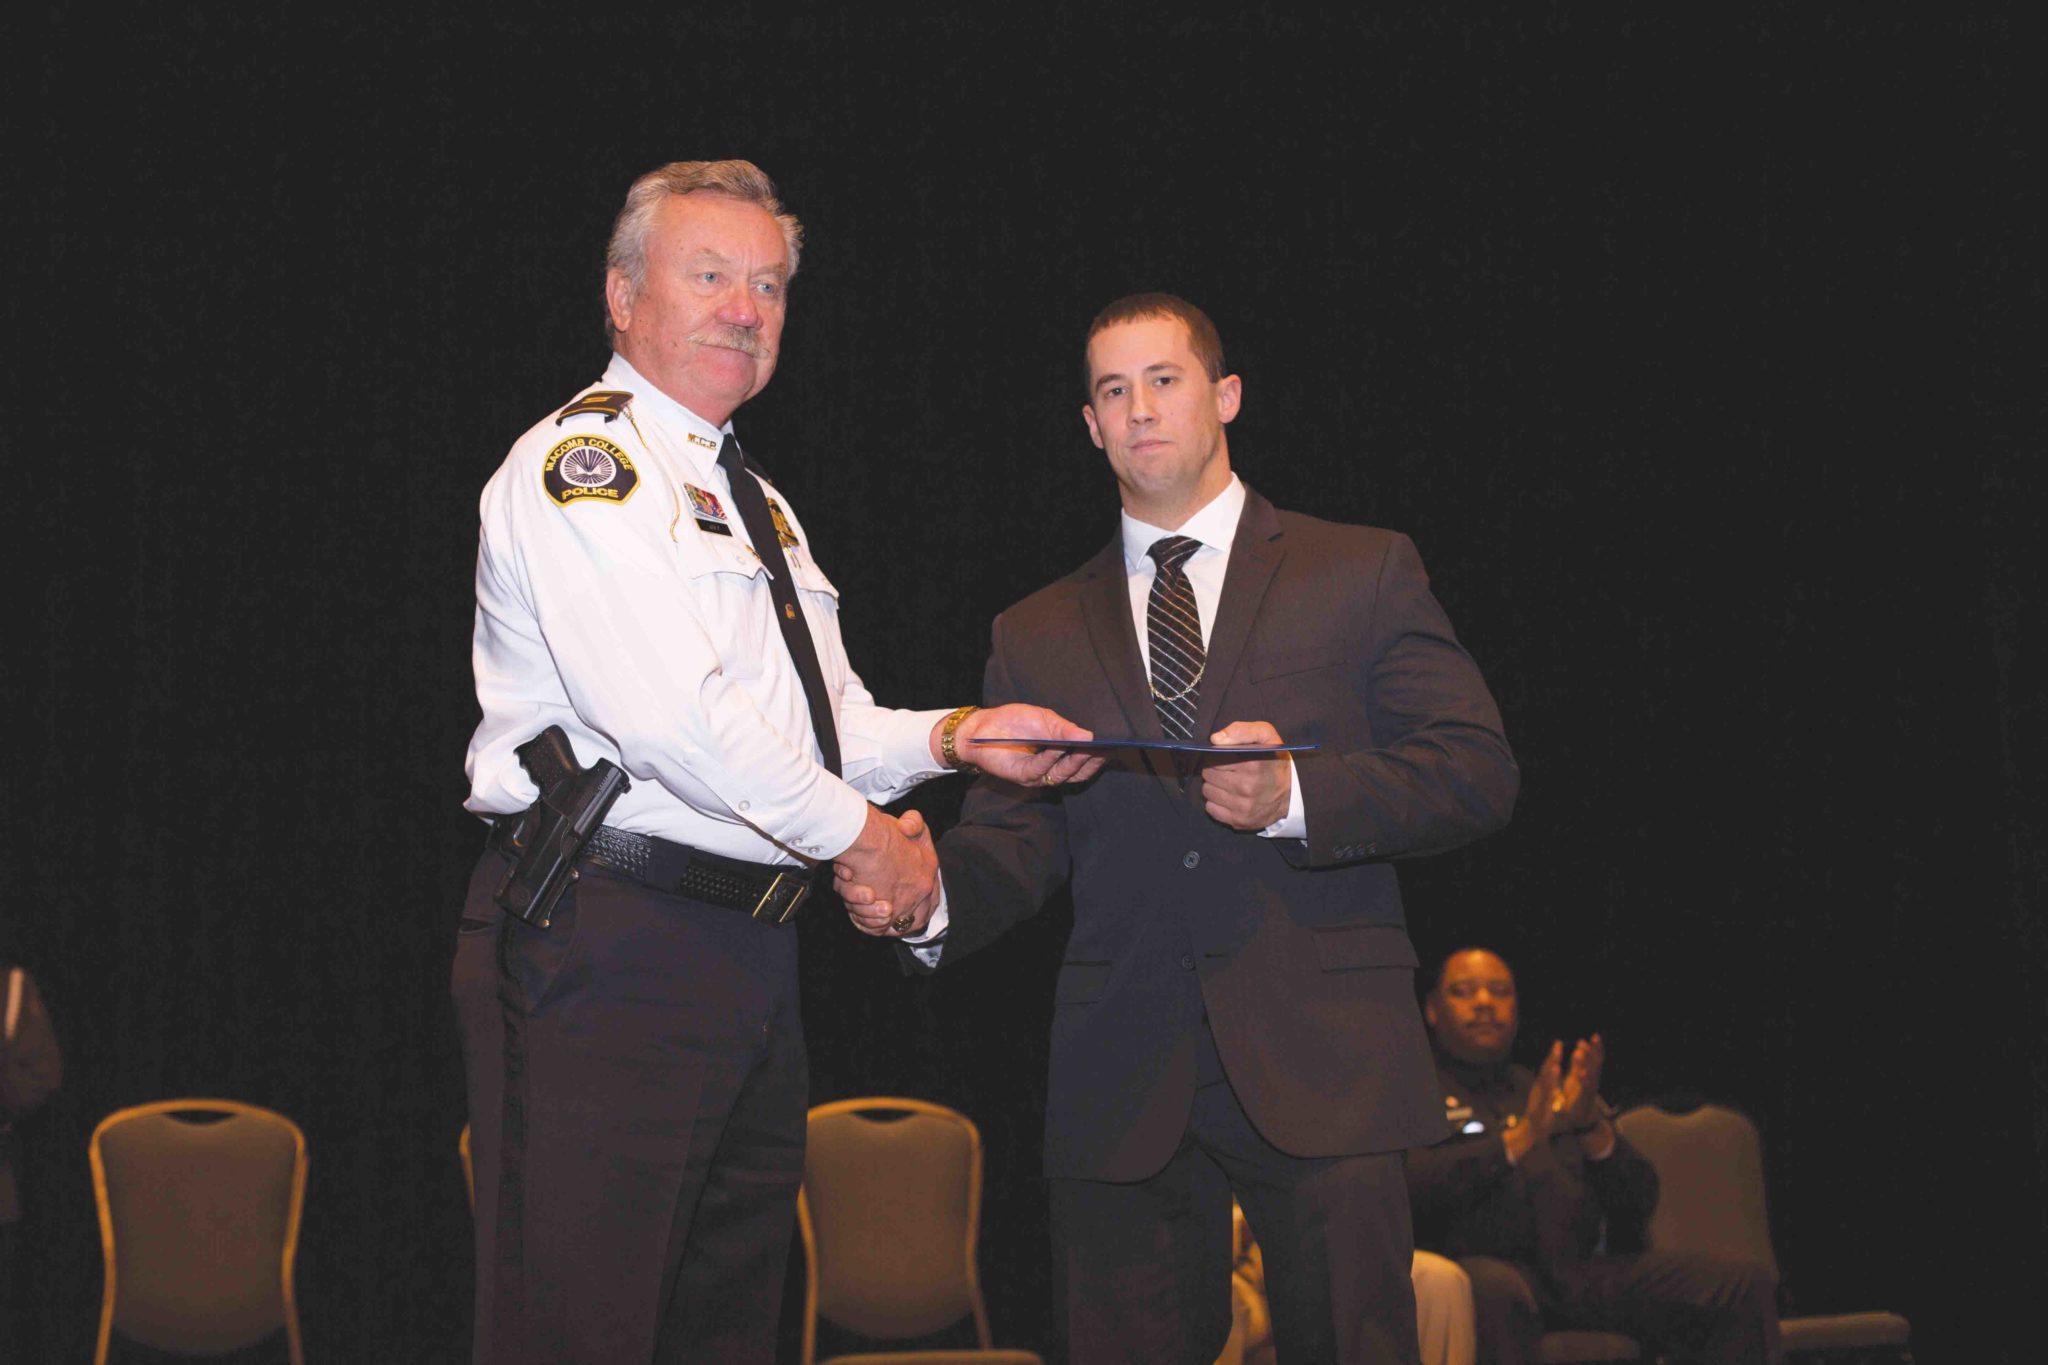 LEEP police academy awards